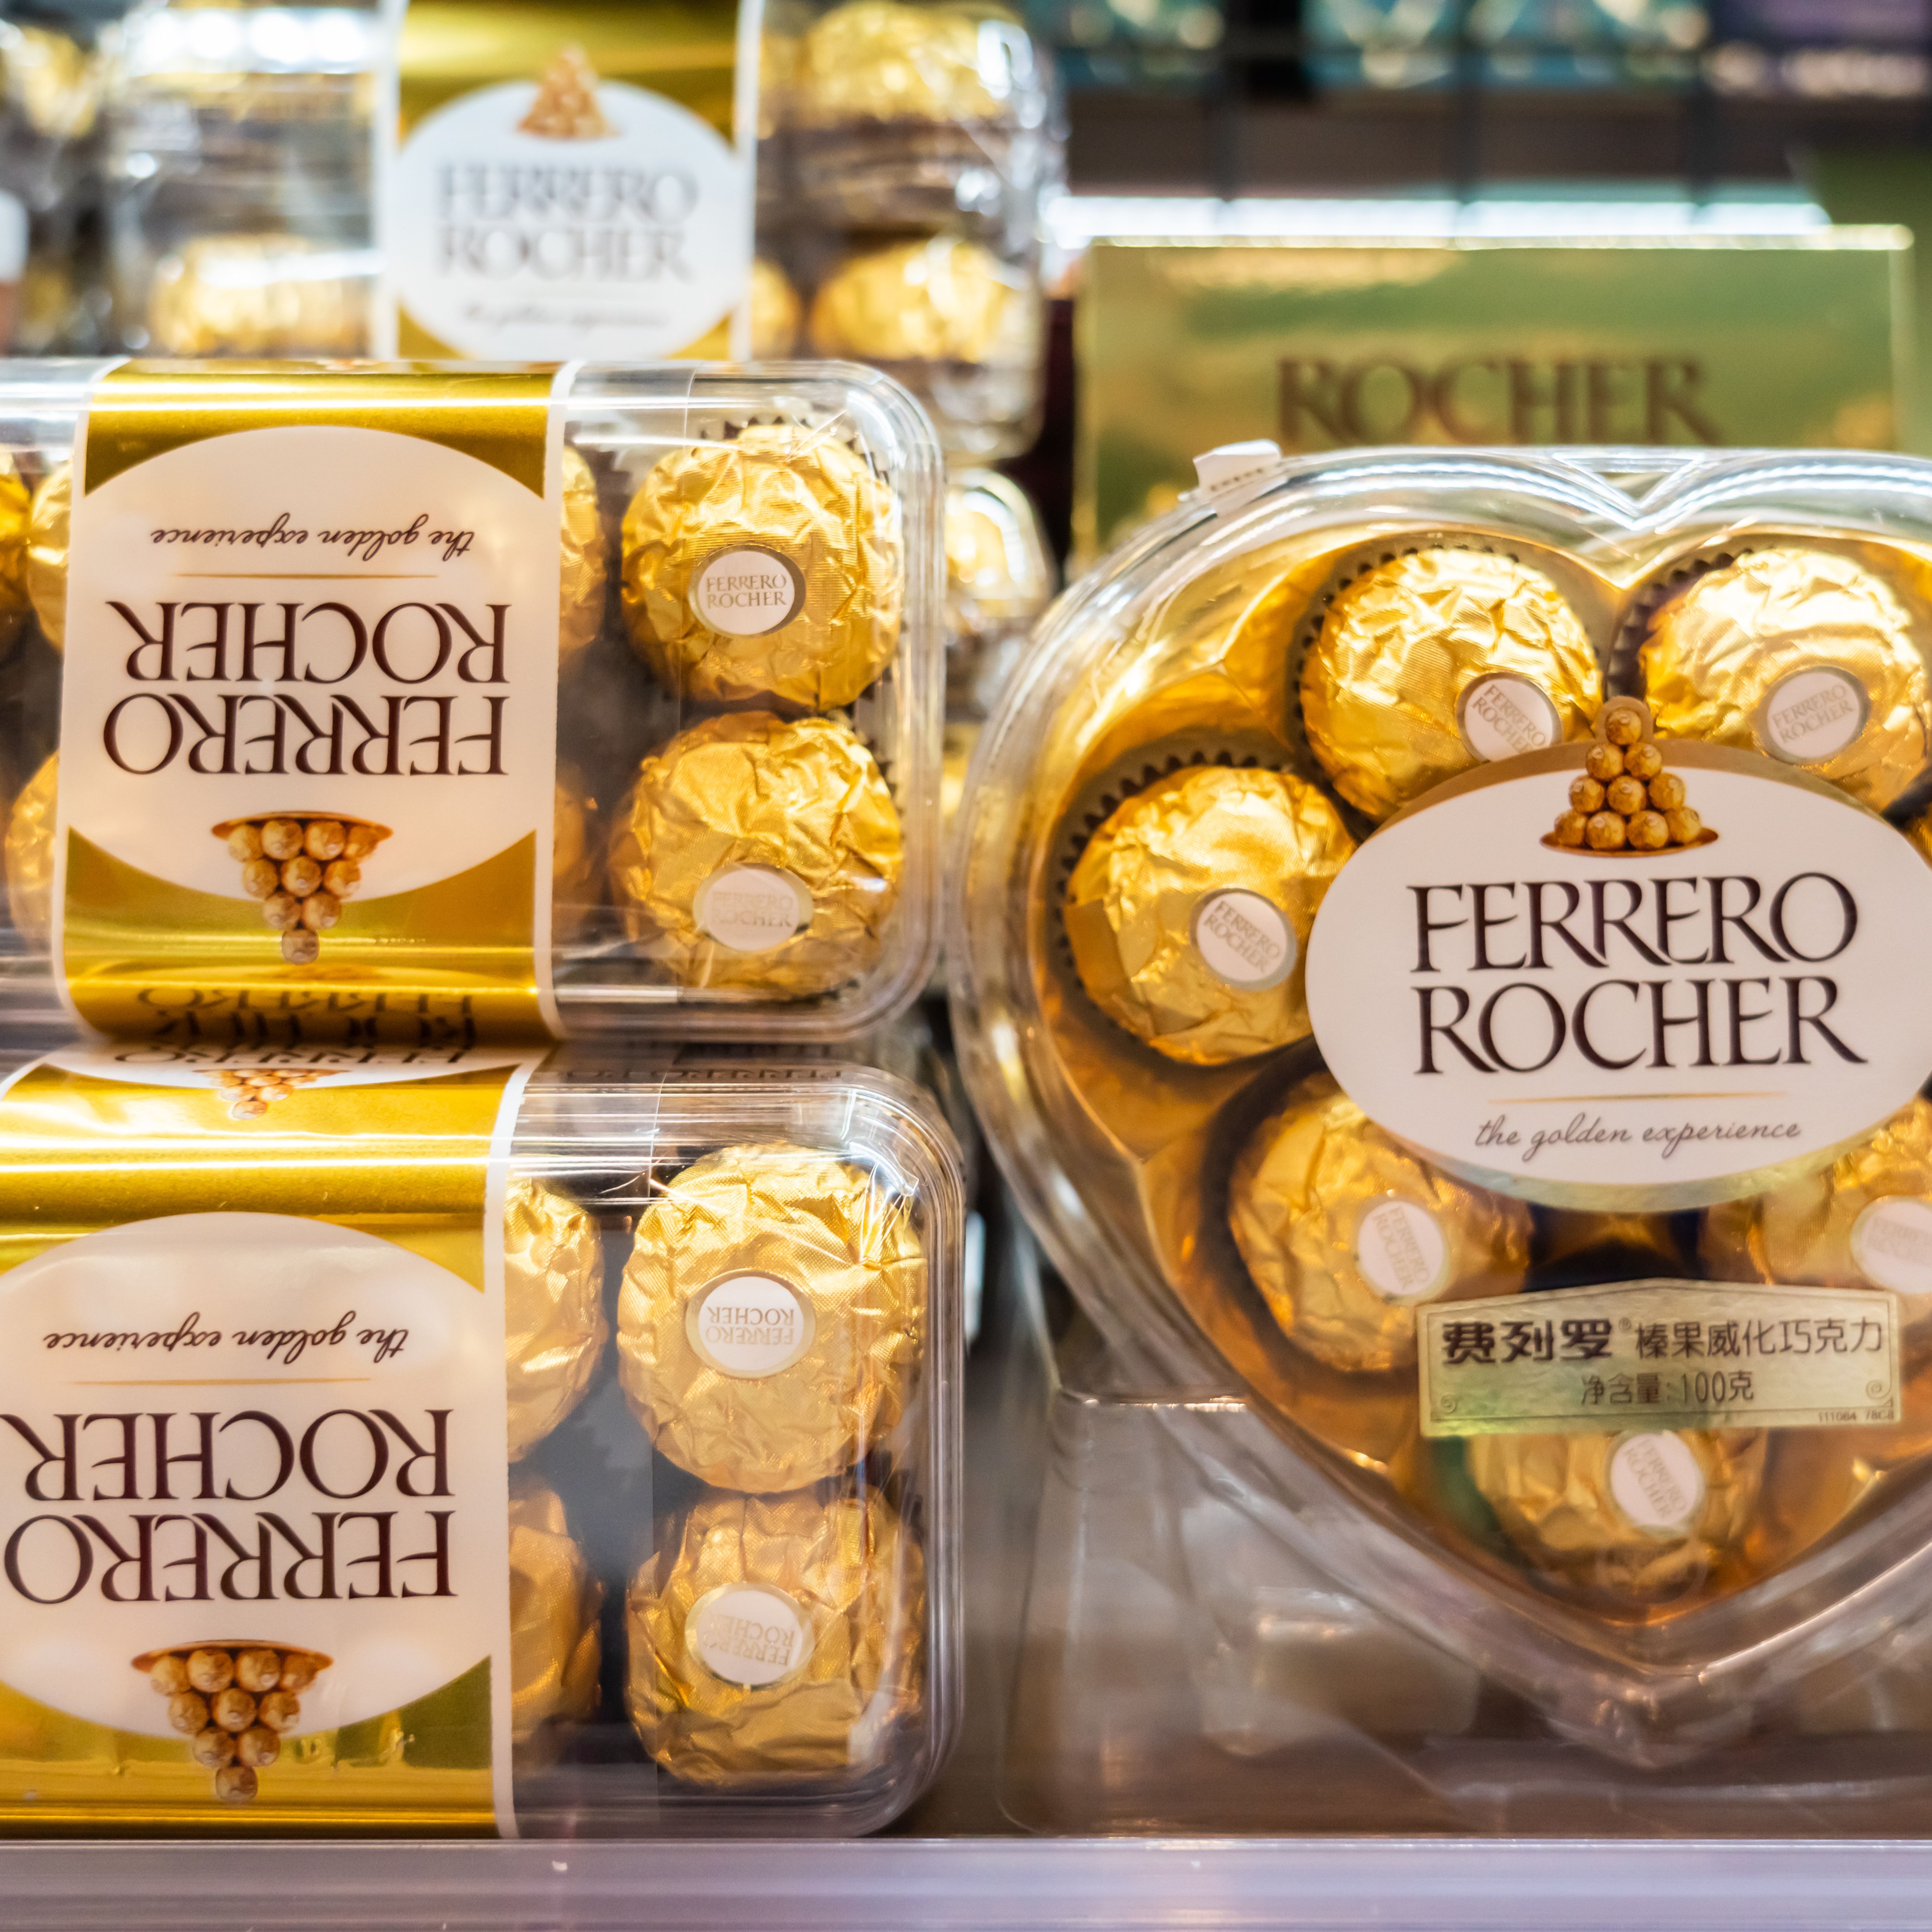 Un produit phare de Ferrero Rocher retiré de la vente